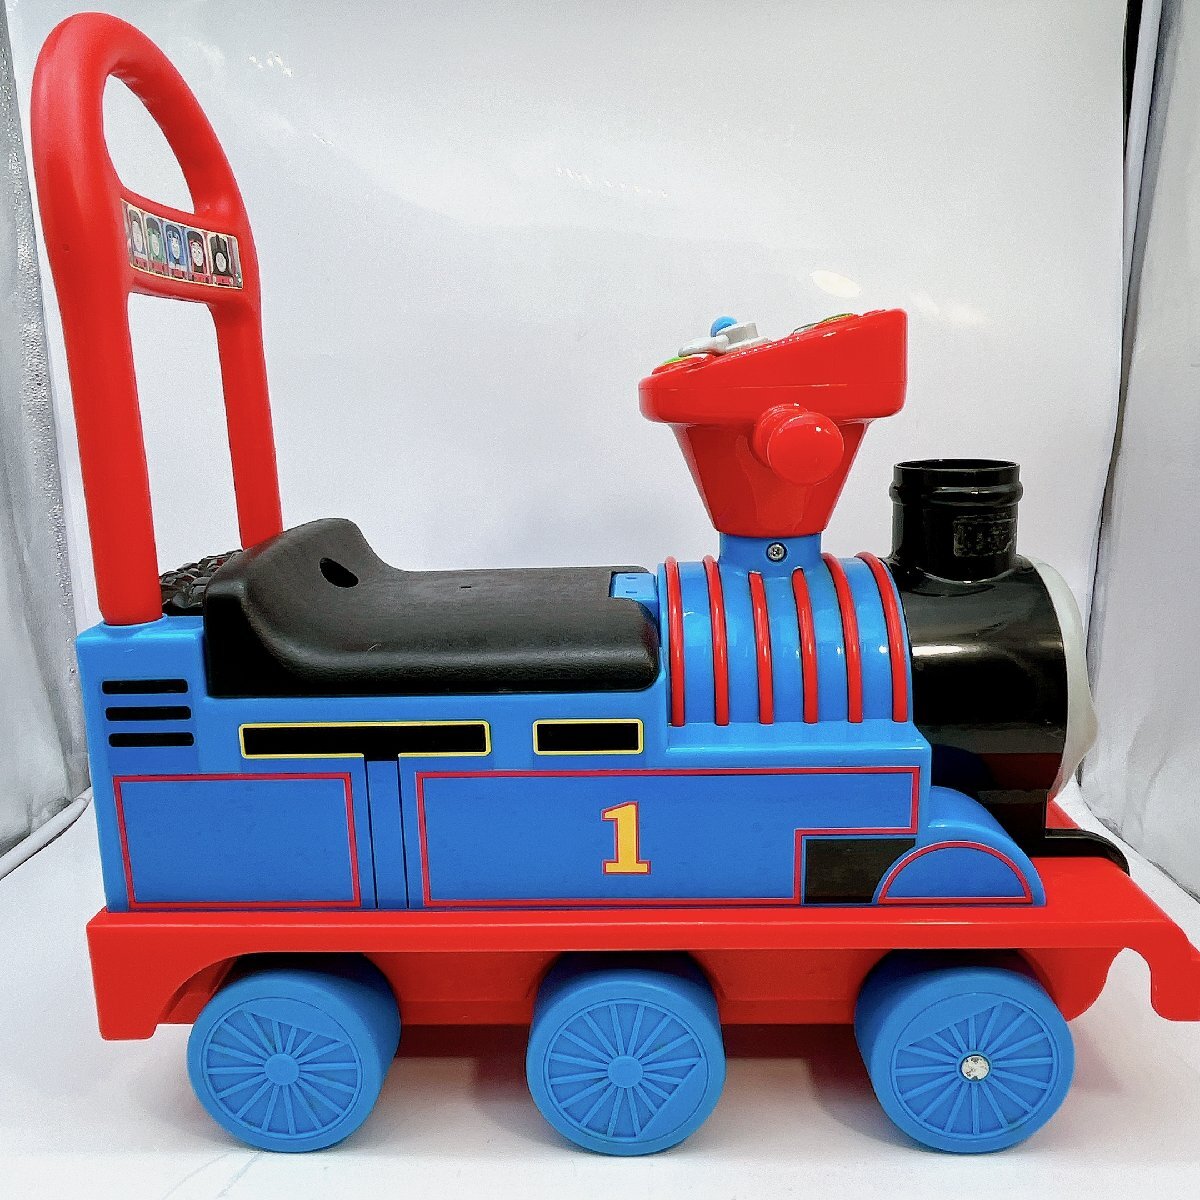 5094 [ рабочее состояние подтверждено ] пассажирский Thomas настоящий vehicle игрушка-"самокат" пара .. пассажирский вдавлено . машина ребенок ребенок . средний завод игрушка паровозик Томас 